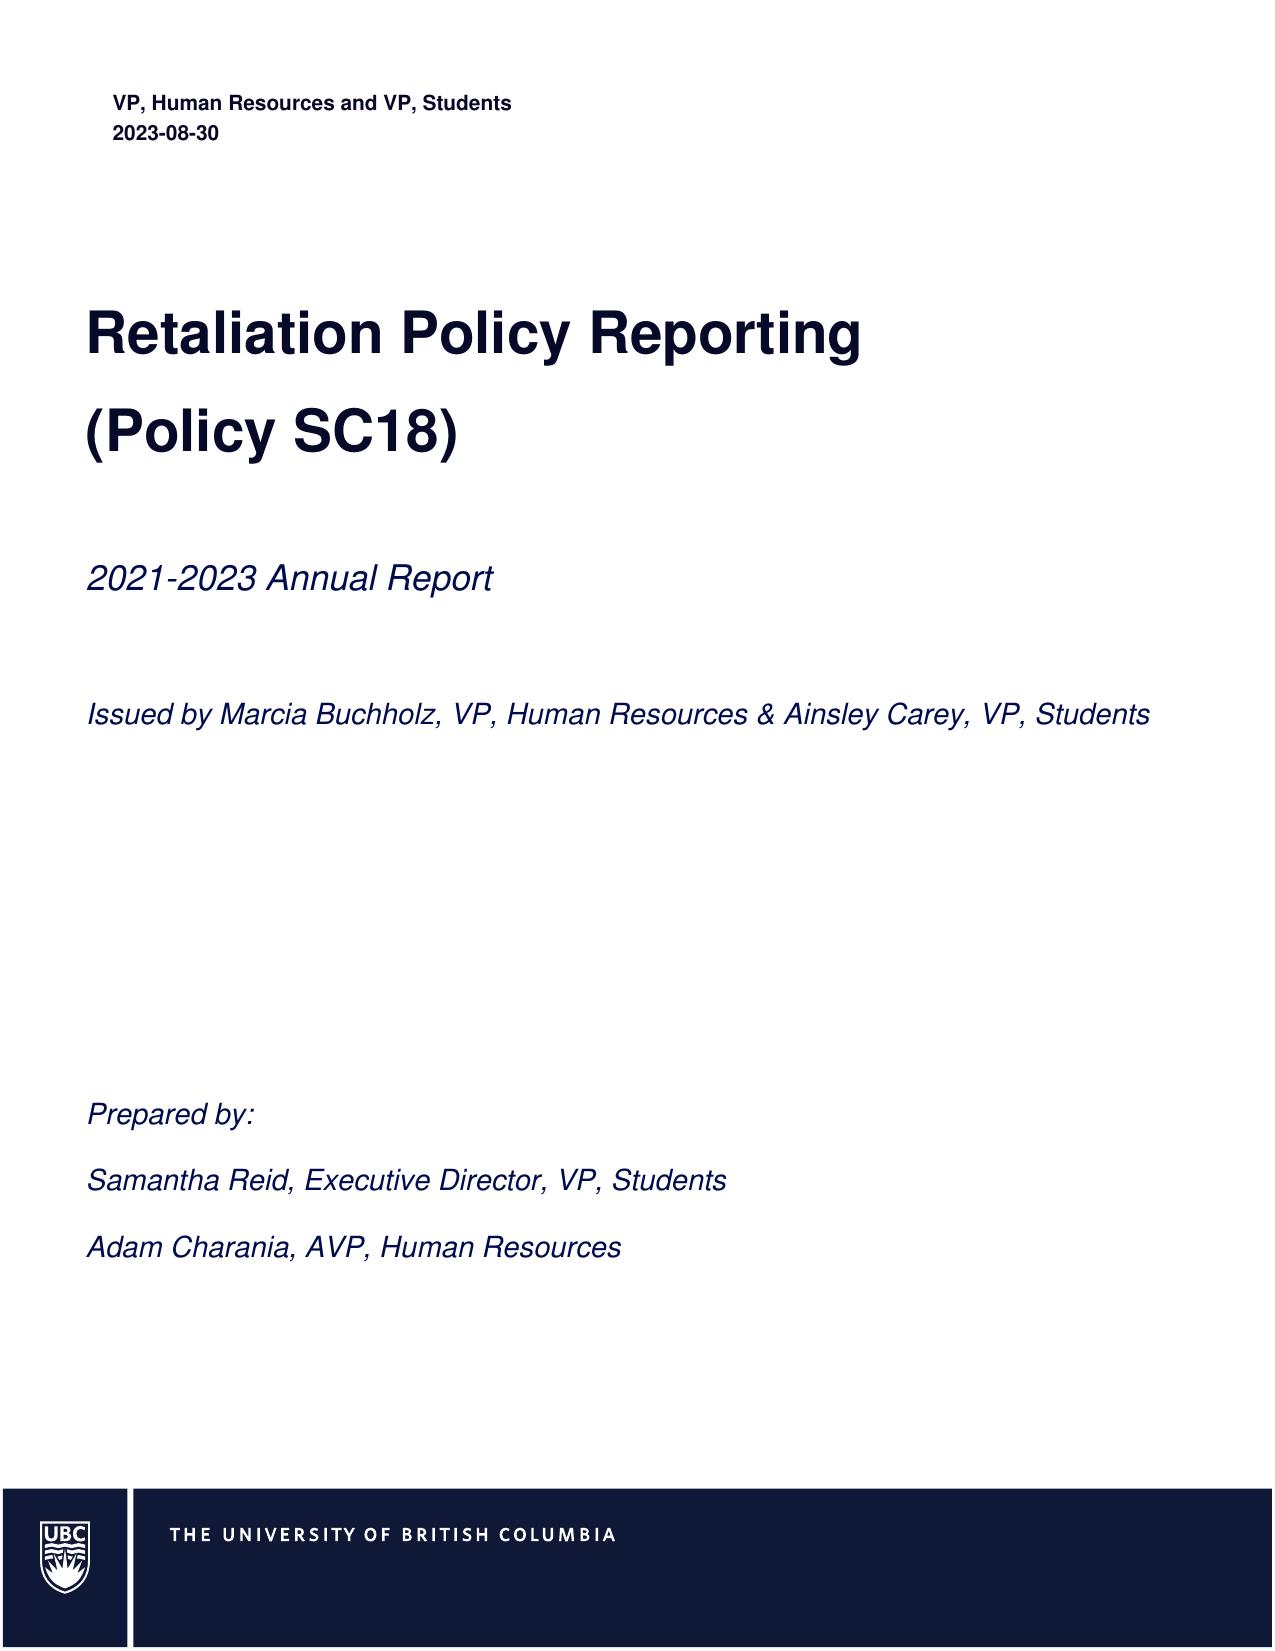 UBC 2023 Annual Report